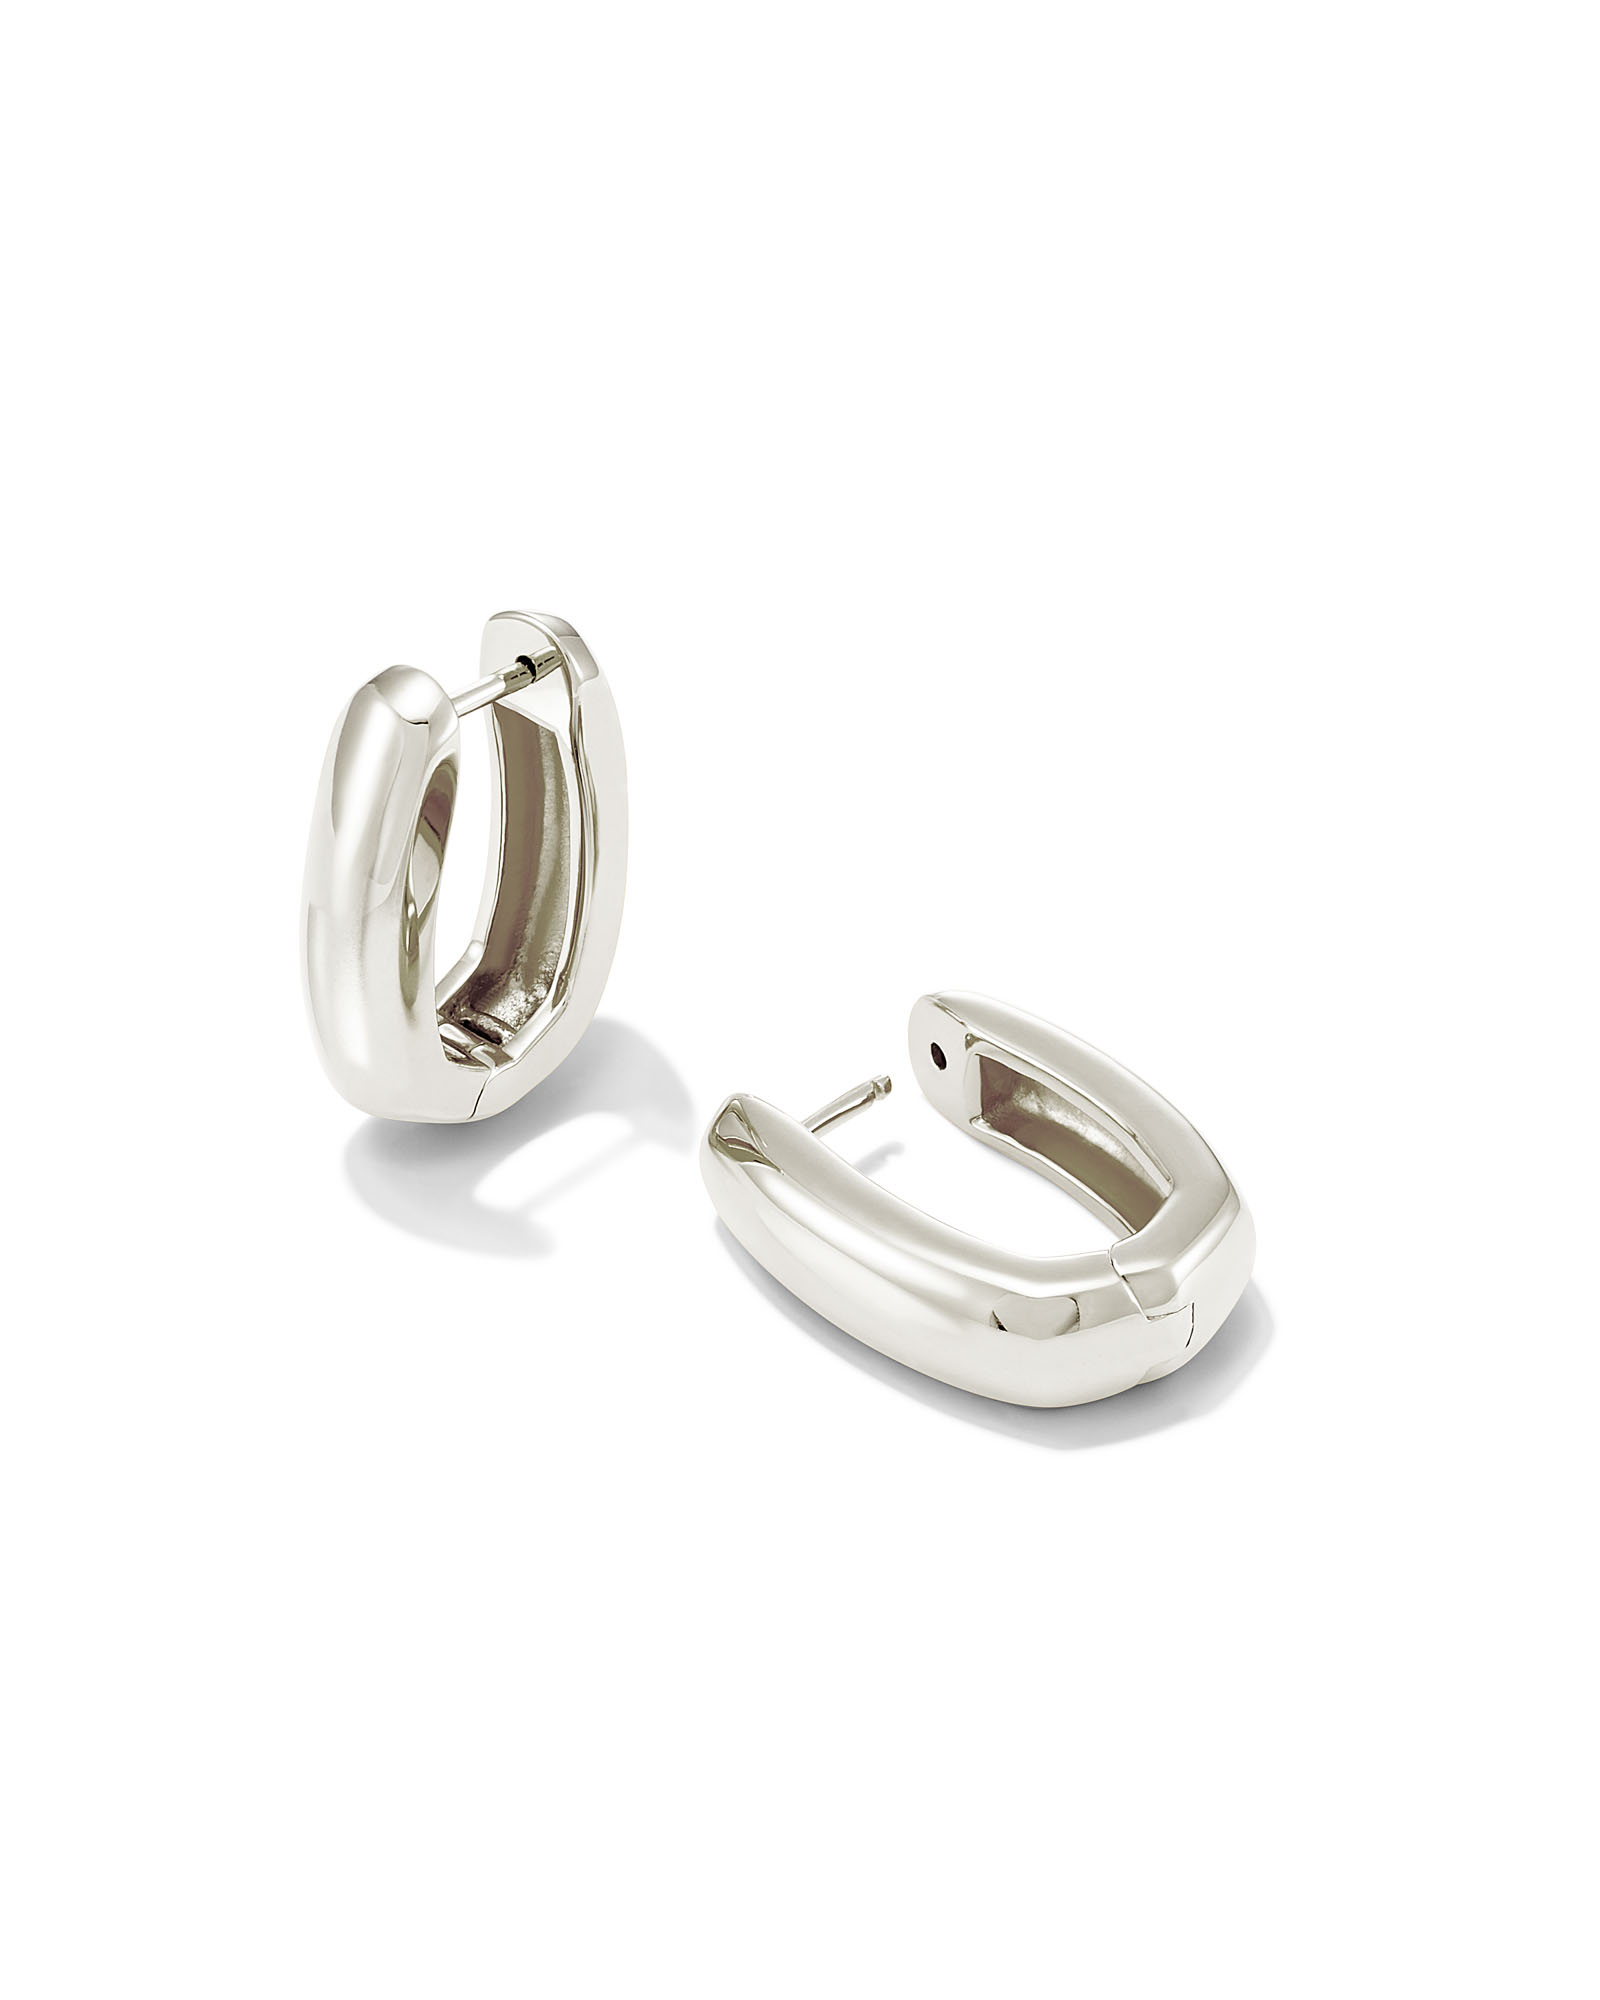 Ellen Wide Huggie Earrings in Sterling Silver | Kendra Scott